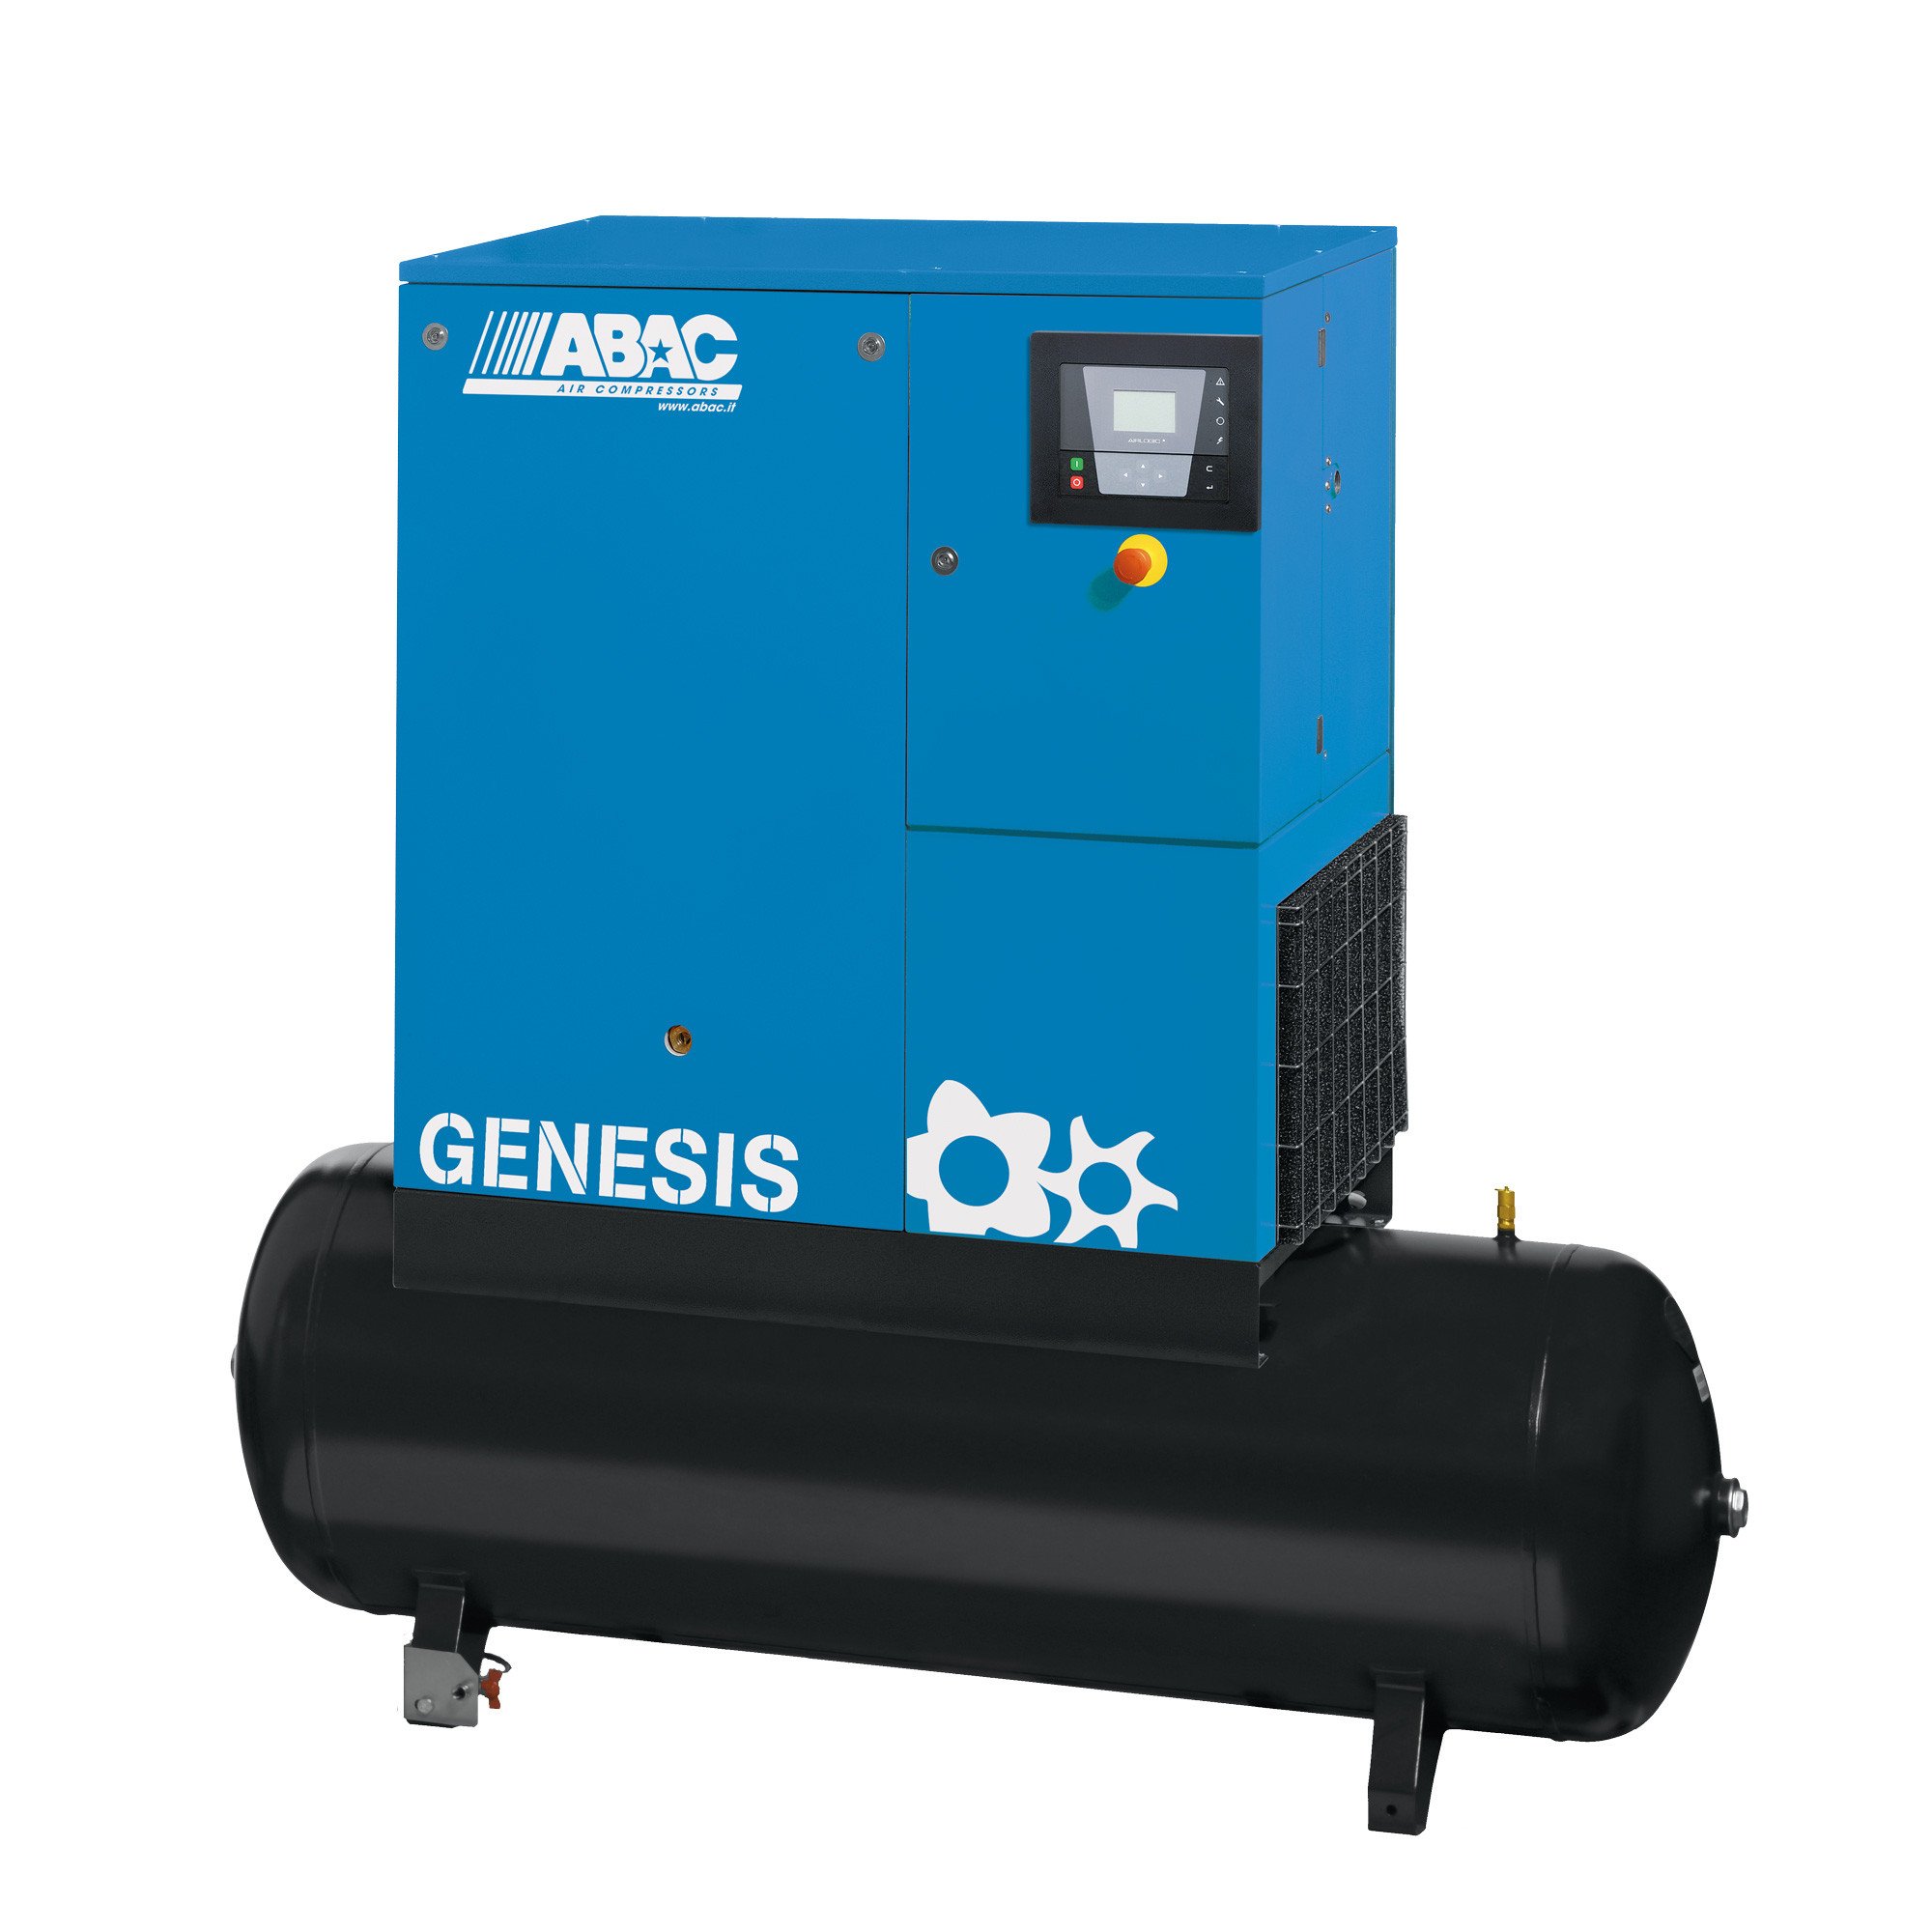 ABAC Genesis 500L, 29.3 CFM, 7.5 kW定速螺杆空压机